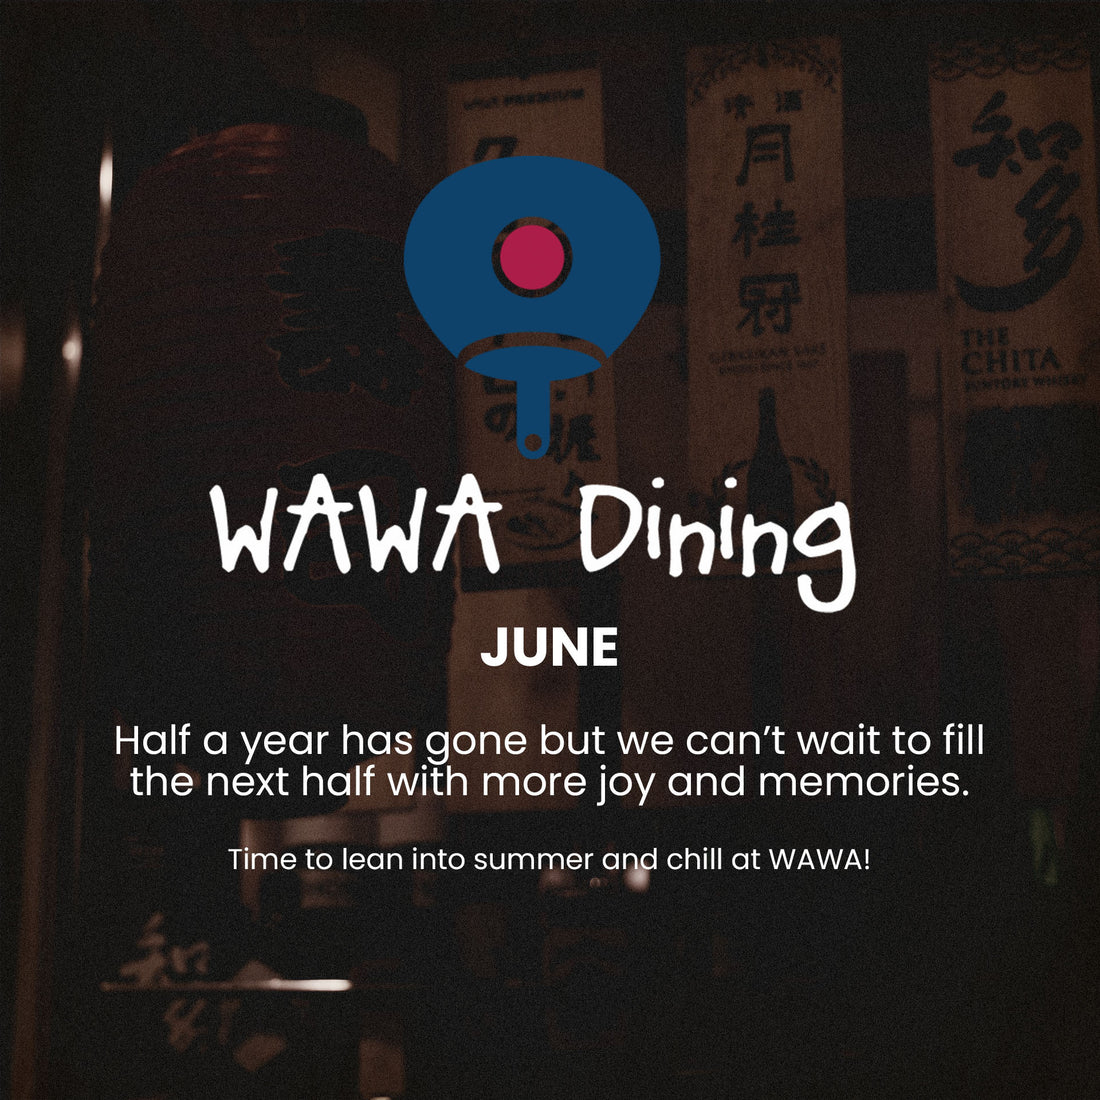 WAWA Dining June 2023